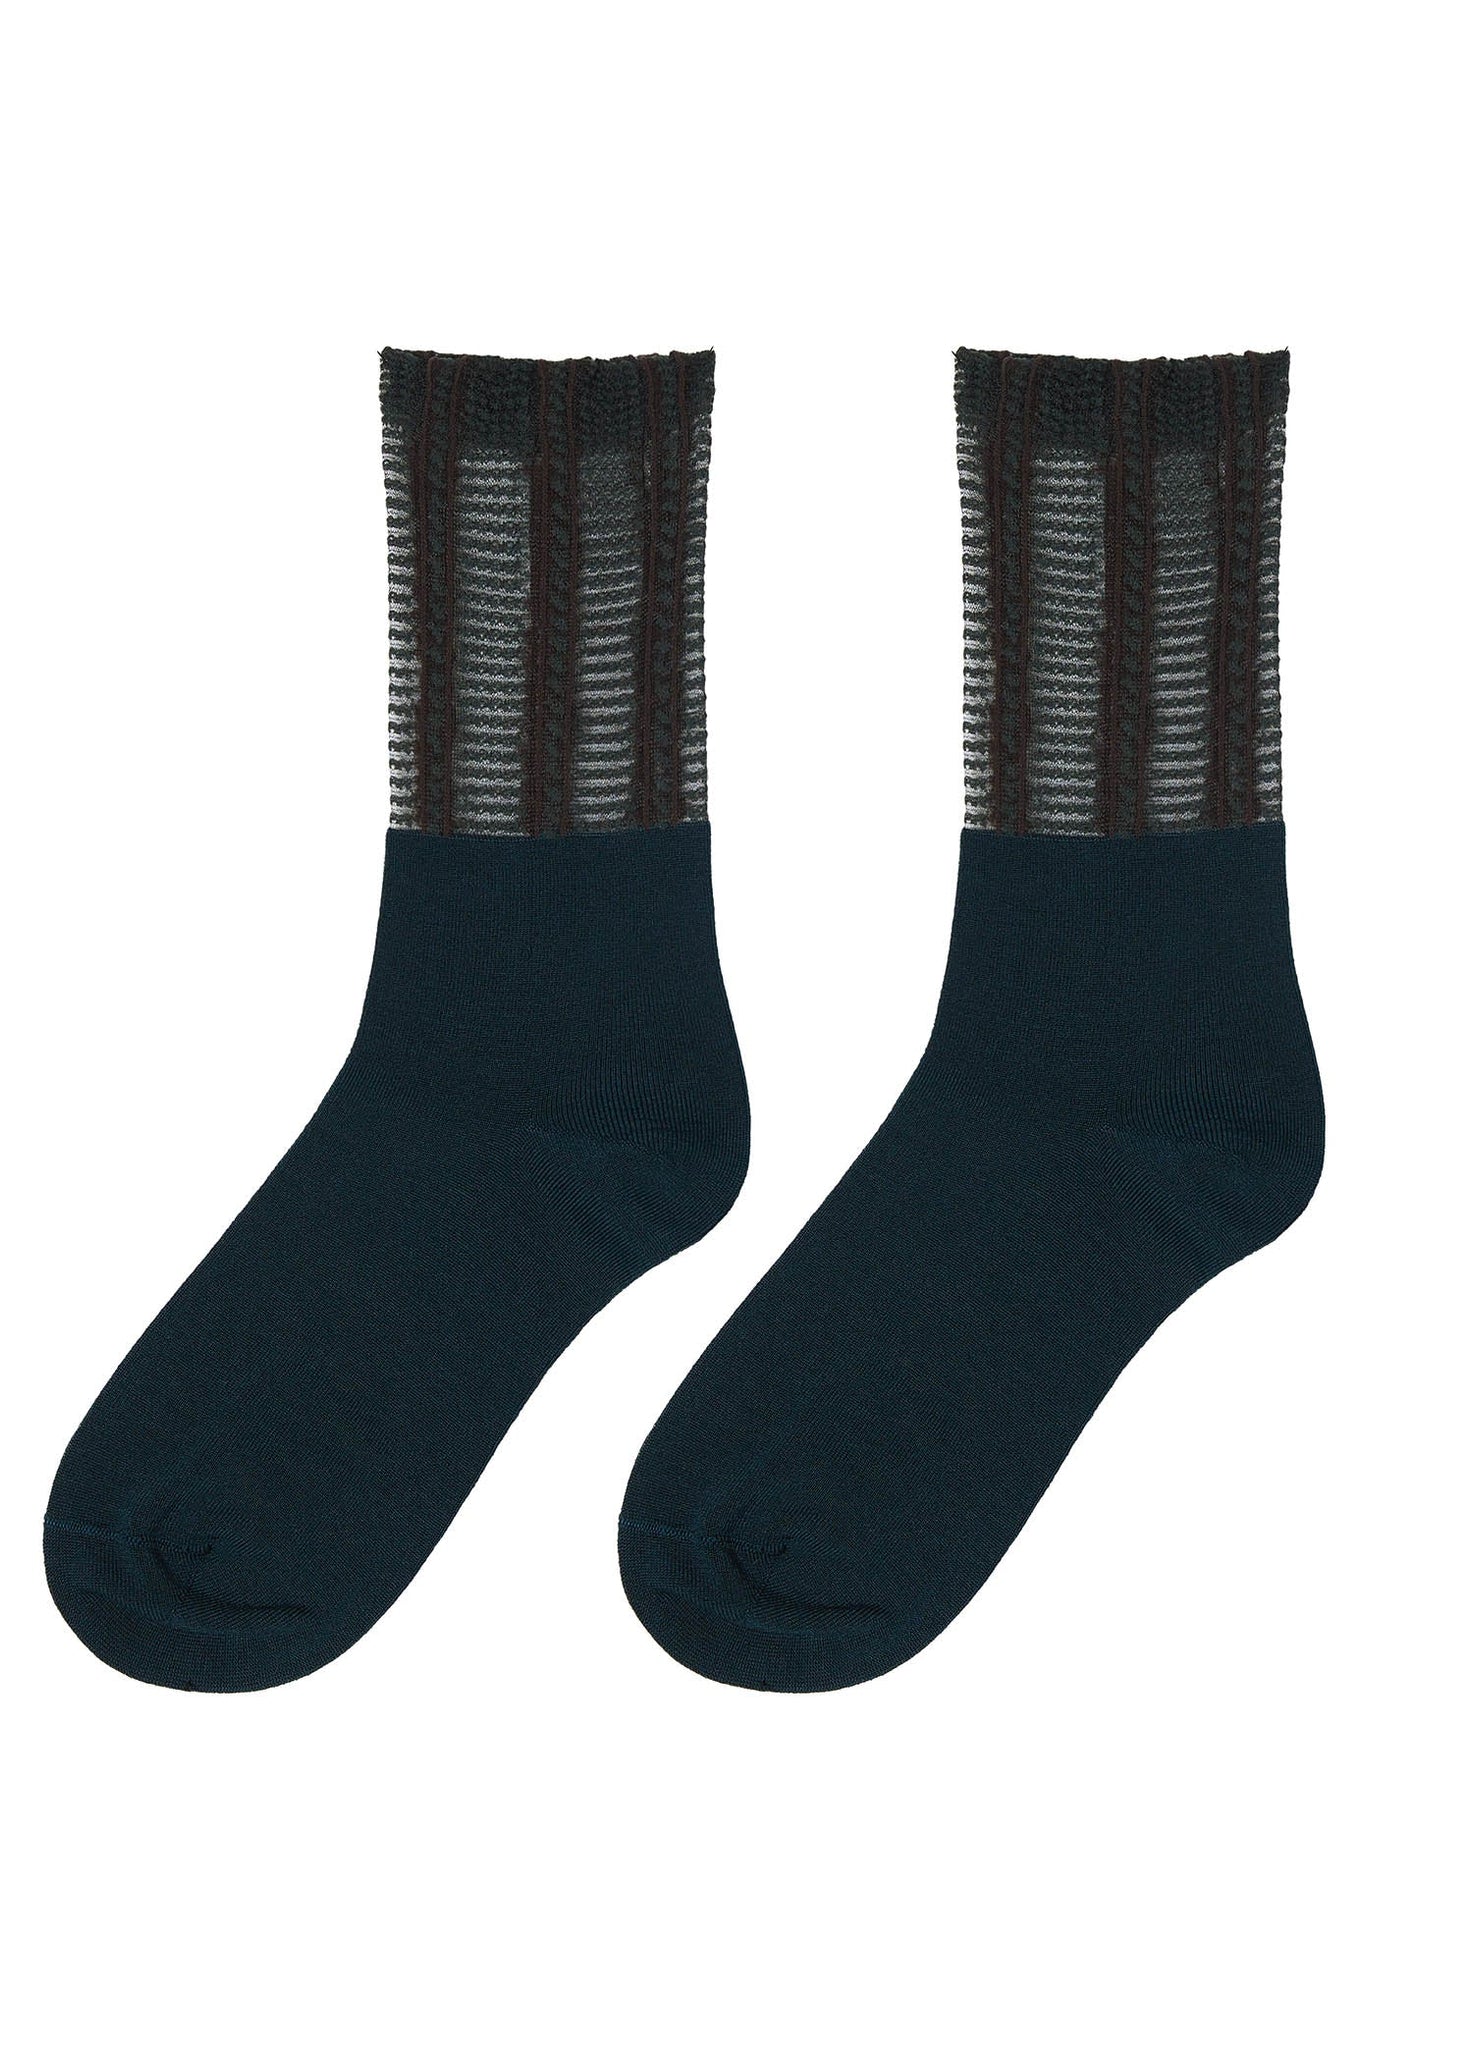 Socks / JNBY Woven Pacthwork Socks